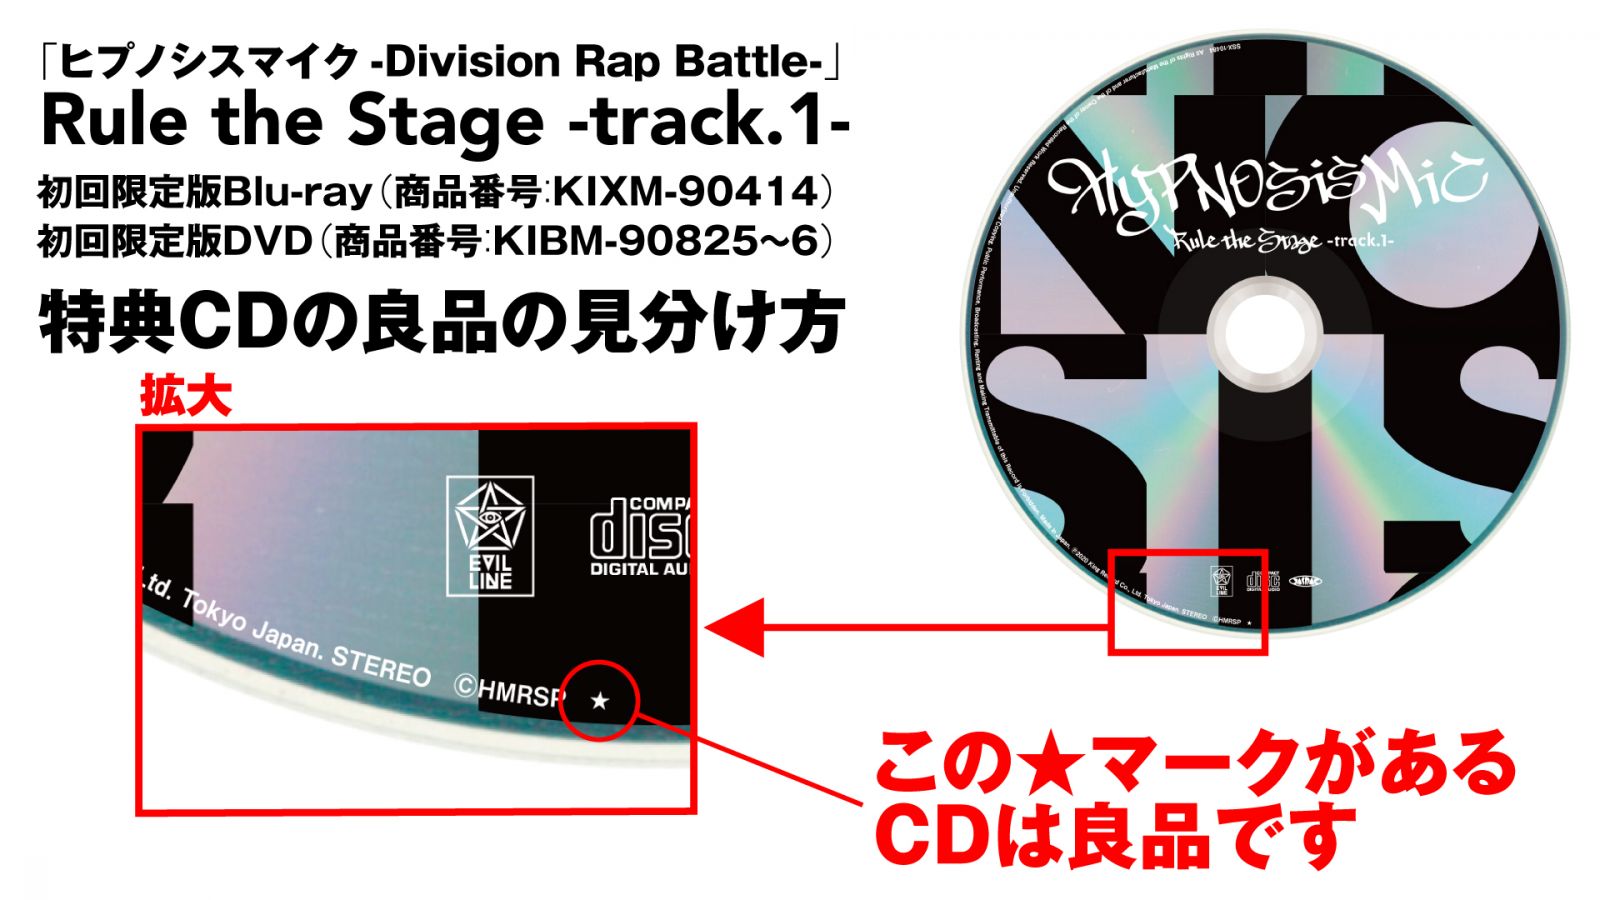 ヒプノシスマイク-Division Rap Battle-」Rule the Stage -track.1 